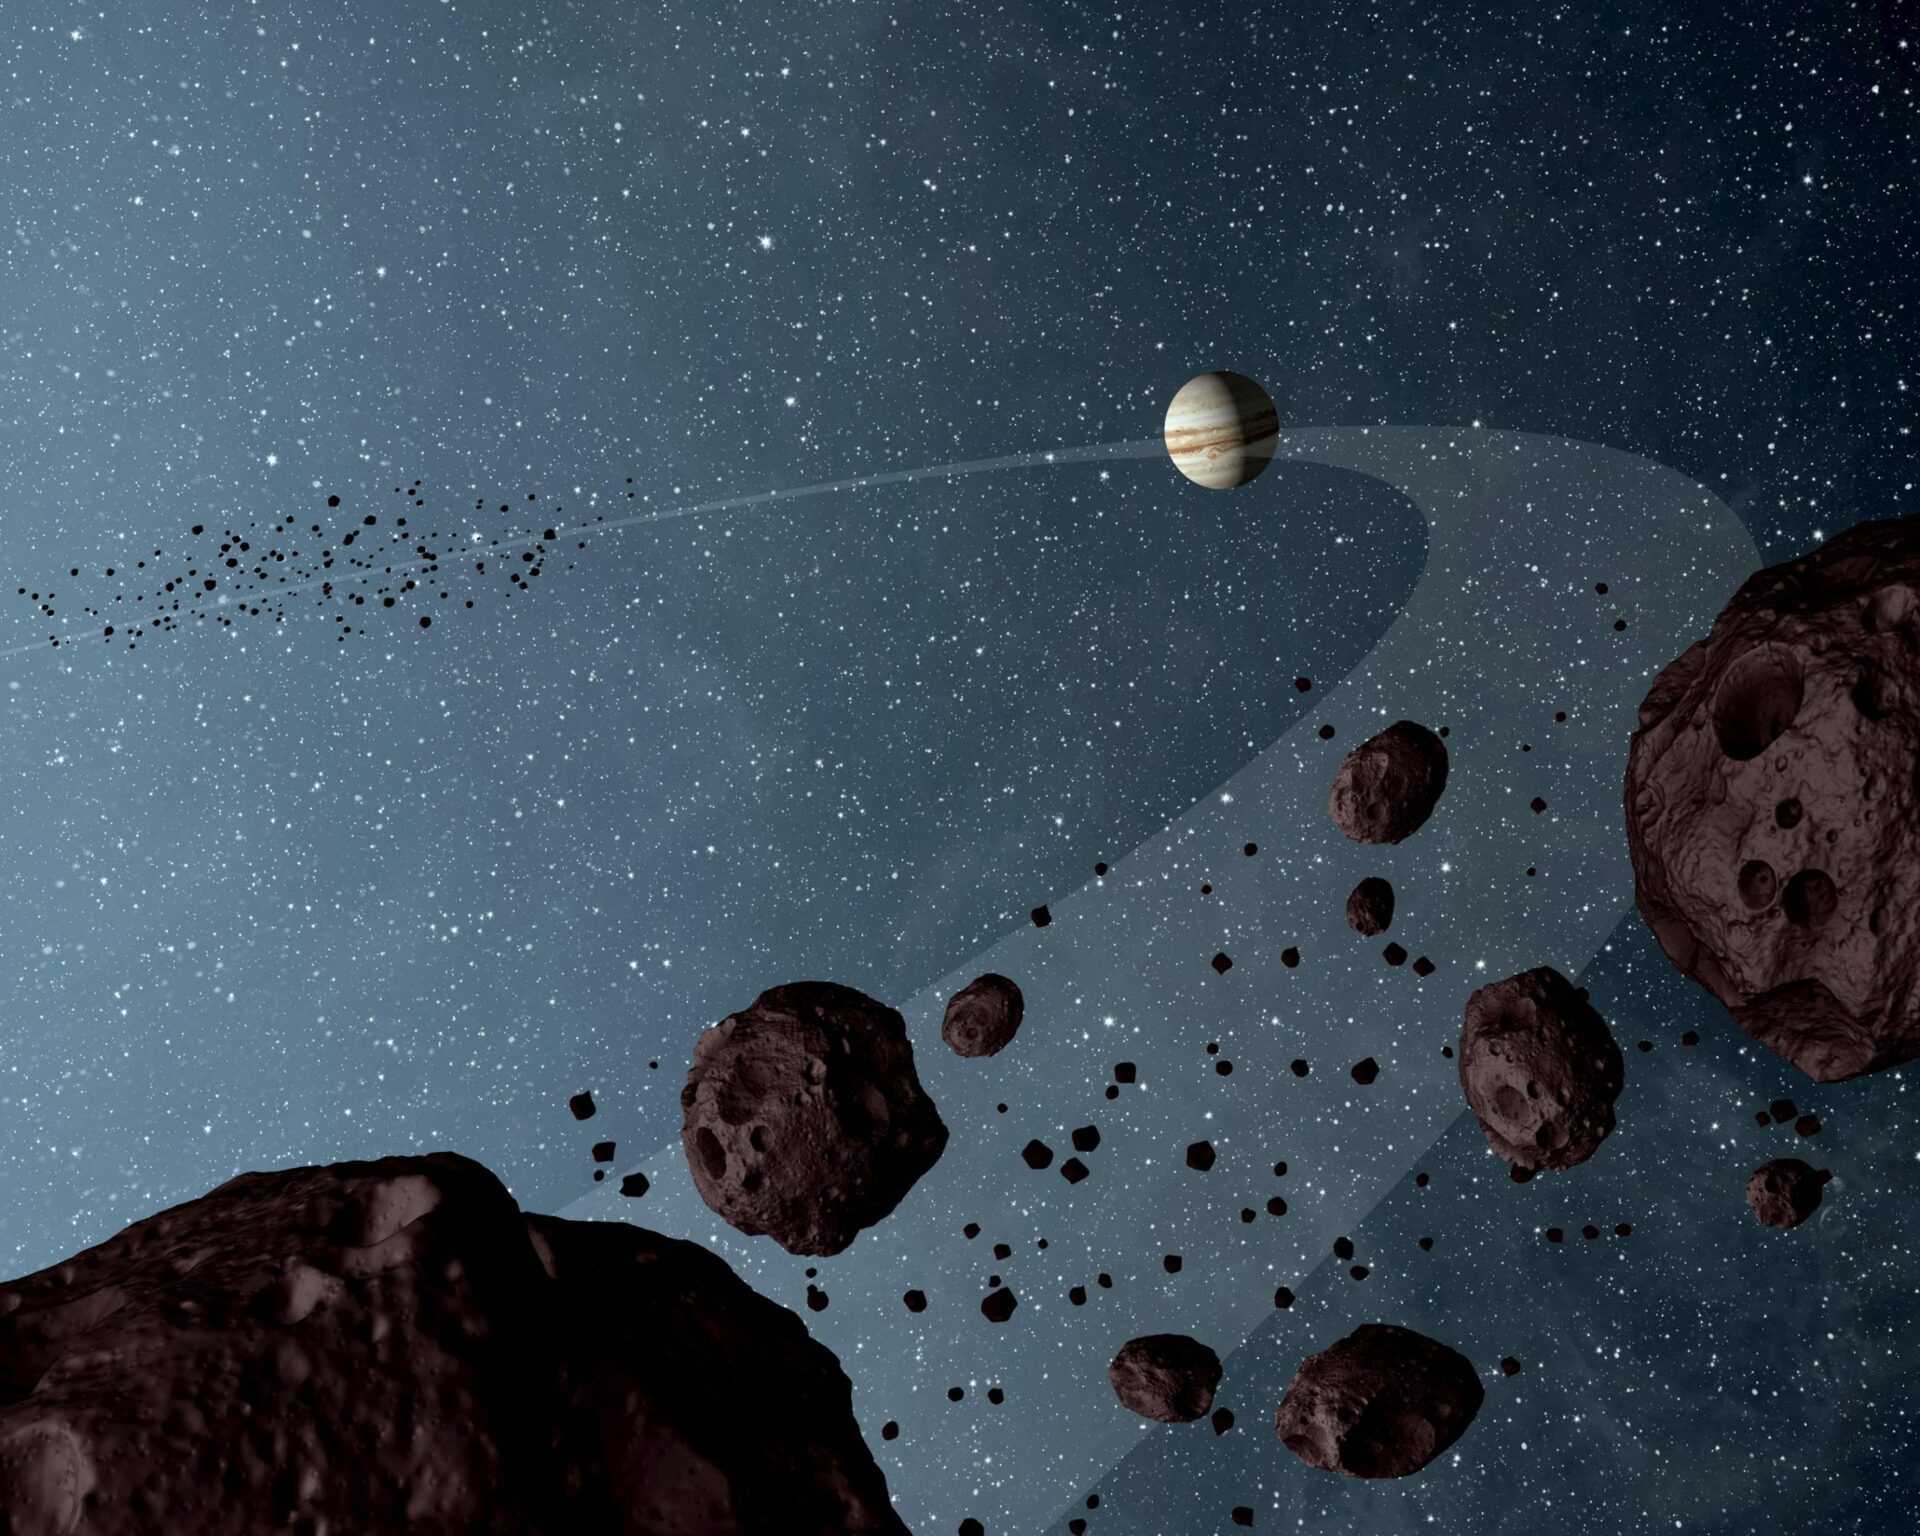 Троянские астероиды: что это такое?